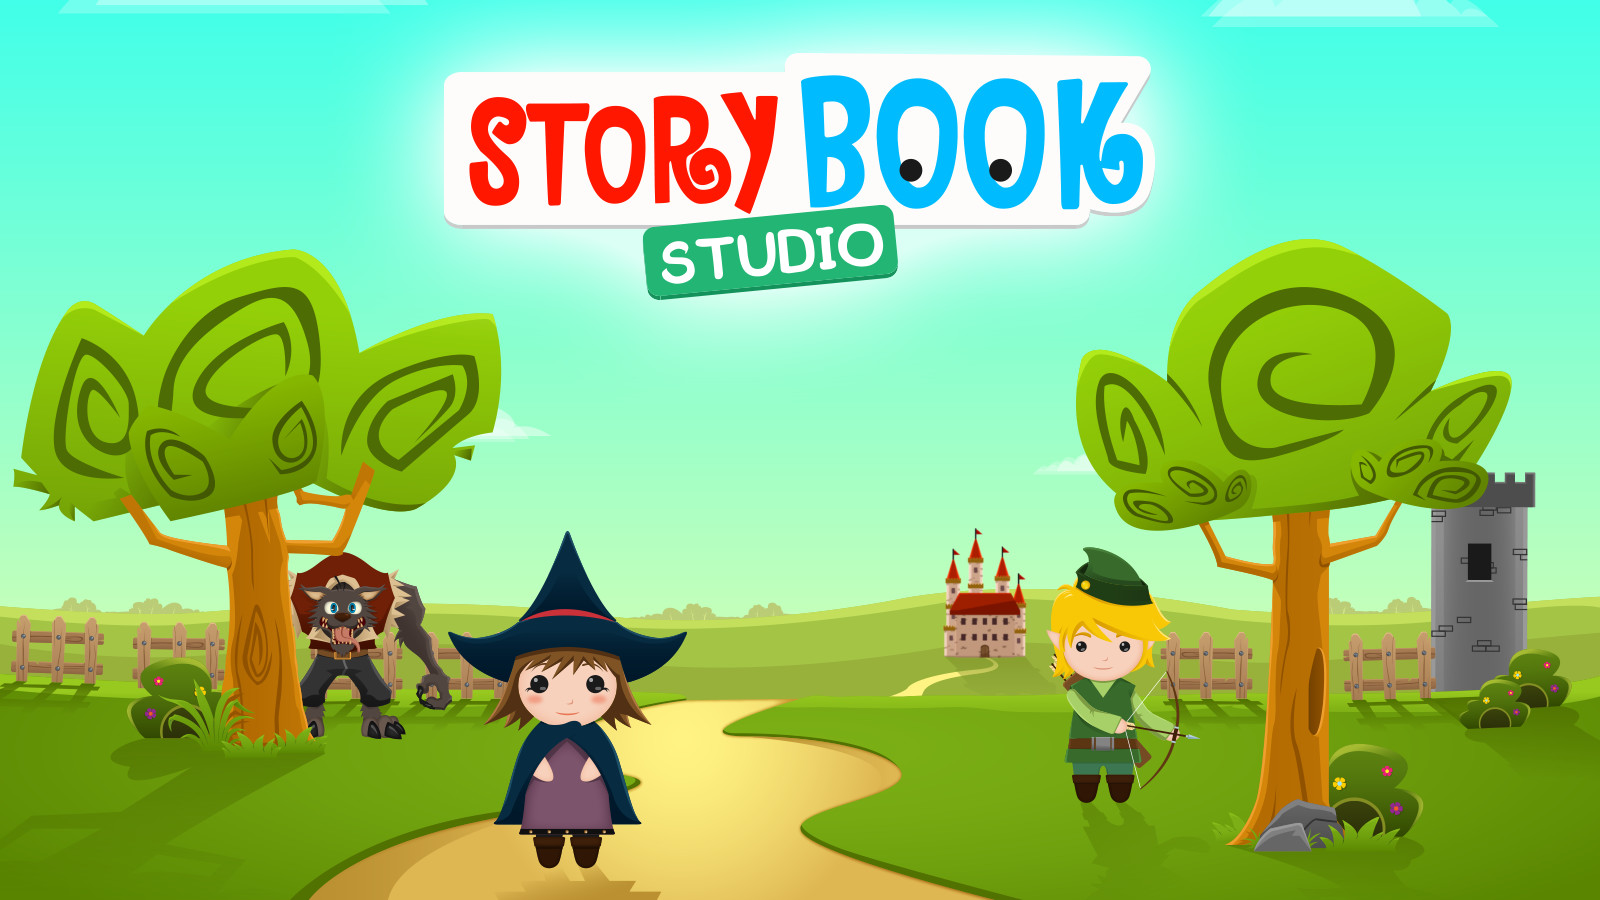 Play Video - StoryBook Studio